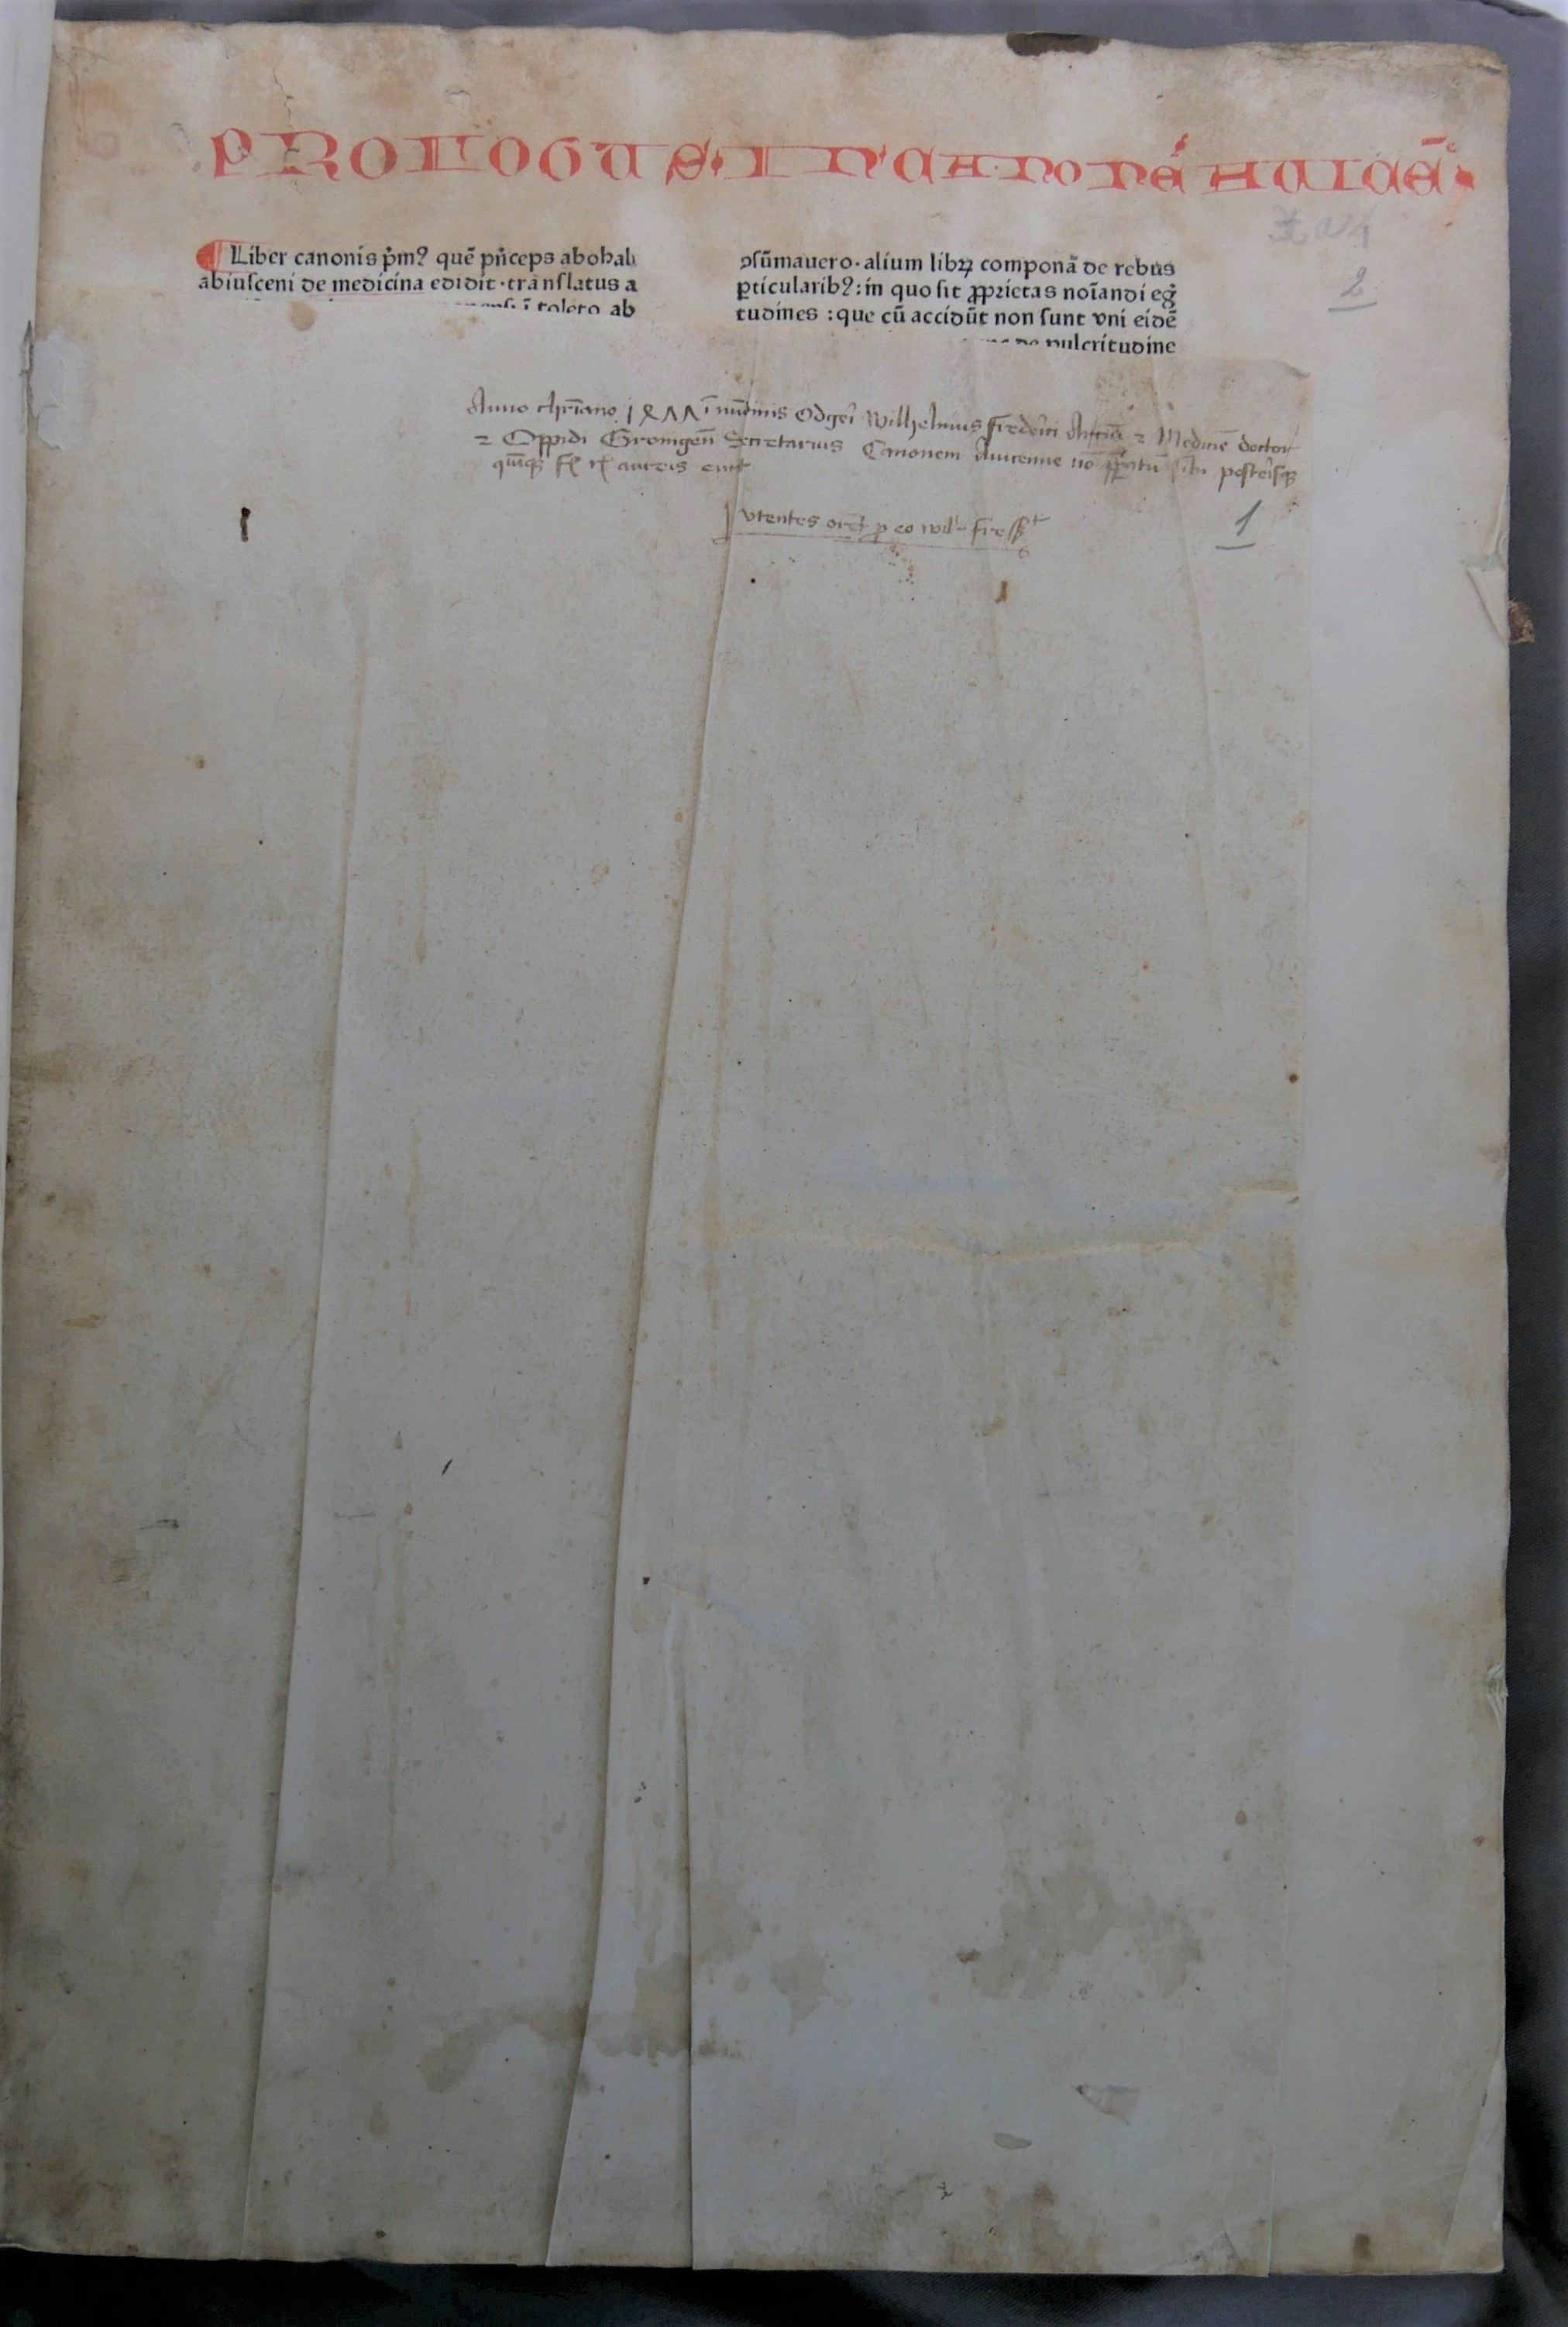 Wilhelmus Frederici’s eigendomsinscriptie voorin zijn Canon medicinae van Avicenna.Wilhelmus Frederici’s inscription in his copy of Avicenna’s Canon medicinae